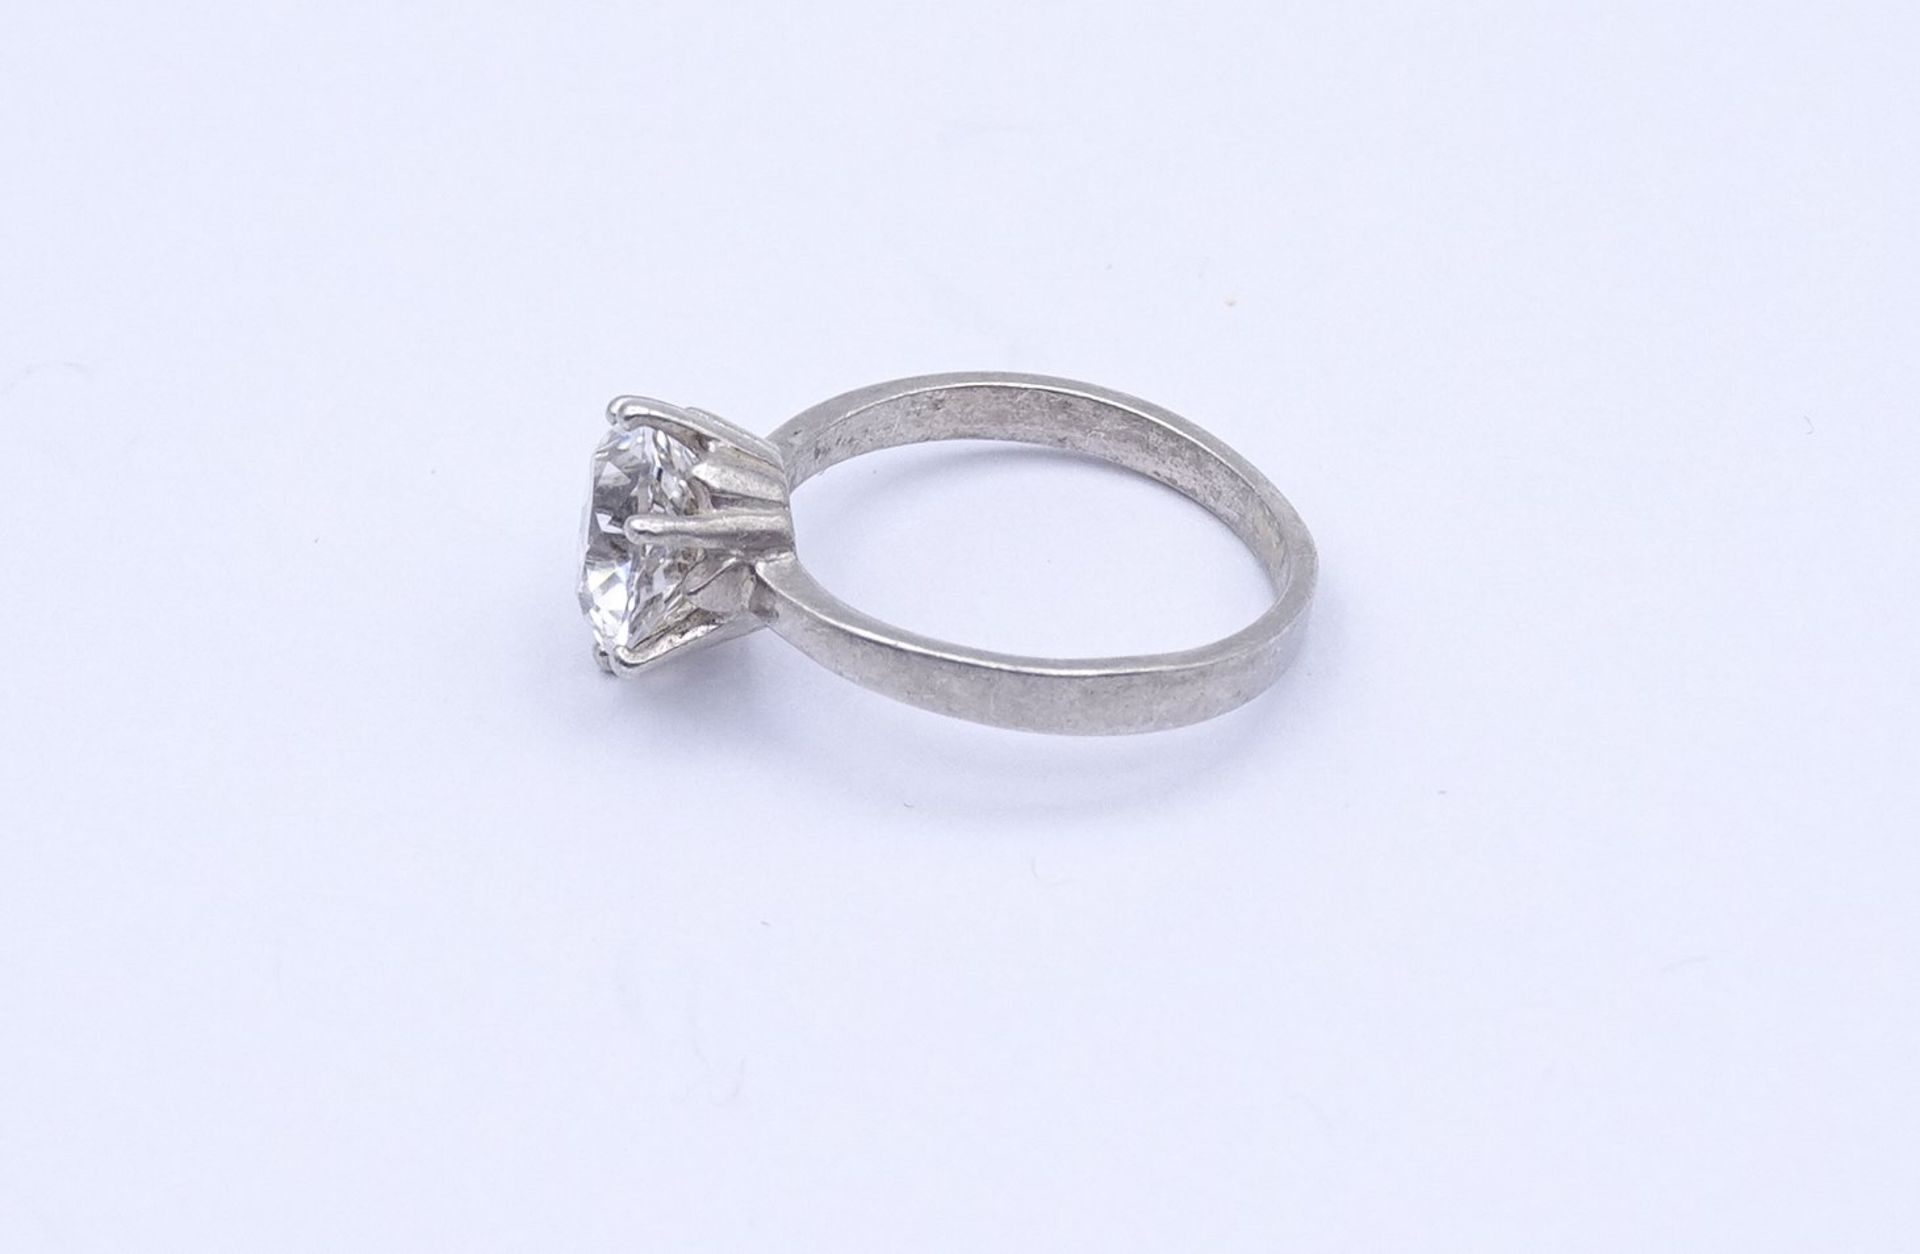 800er Silber Ring mit einem klaren Stein, 2,1g., RG 51 - Image 3 of 3